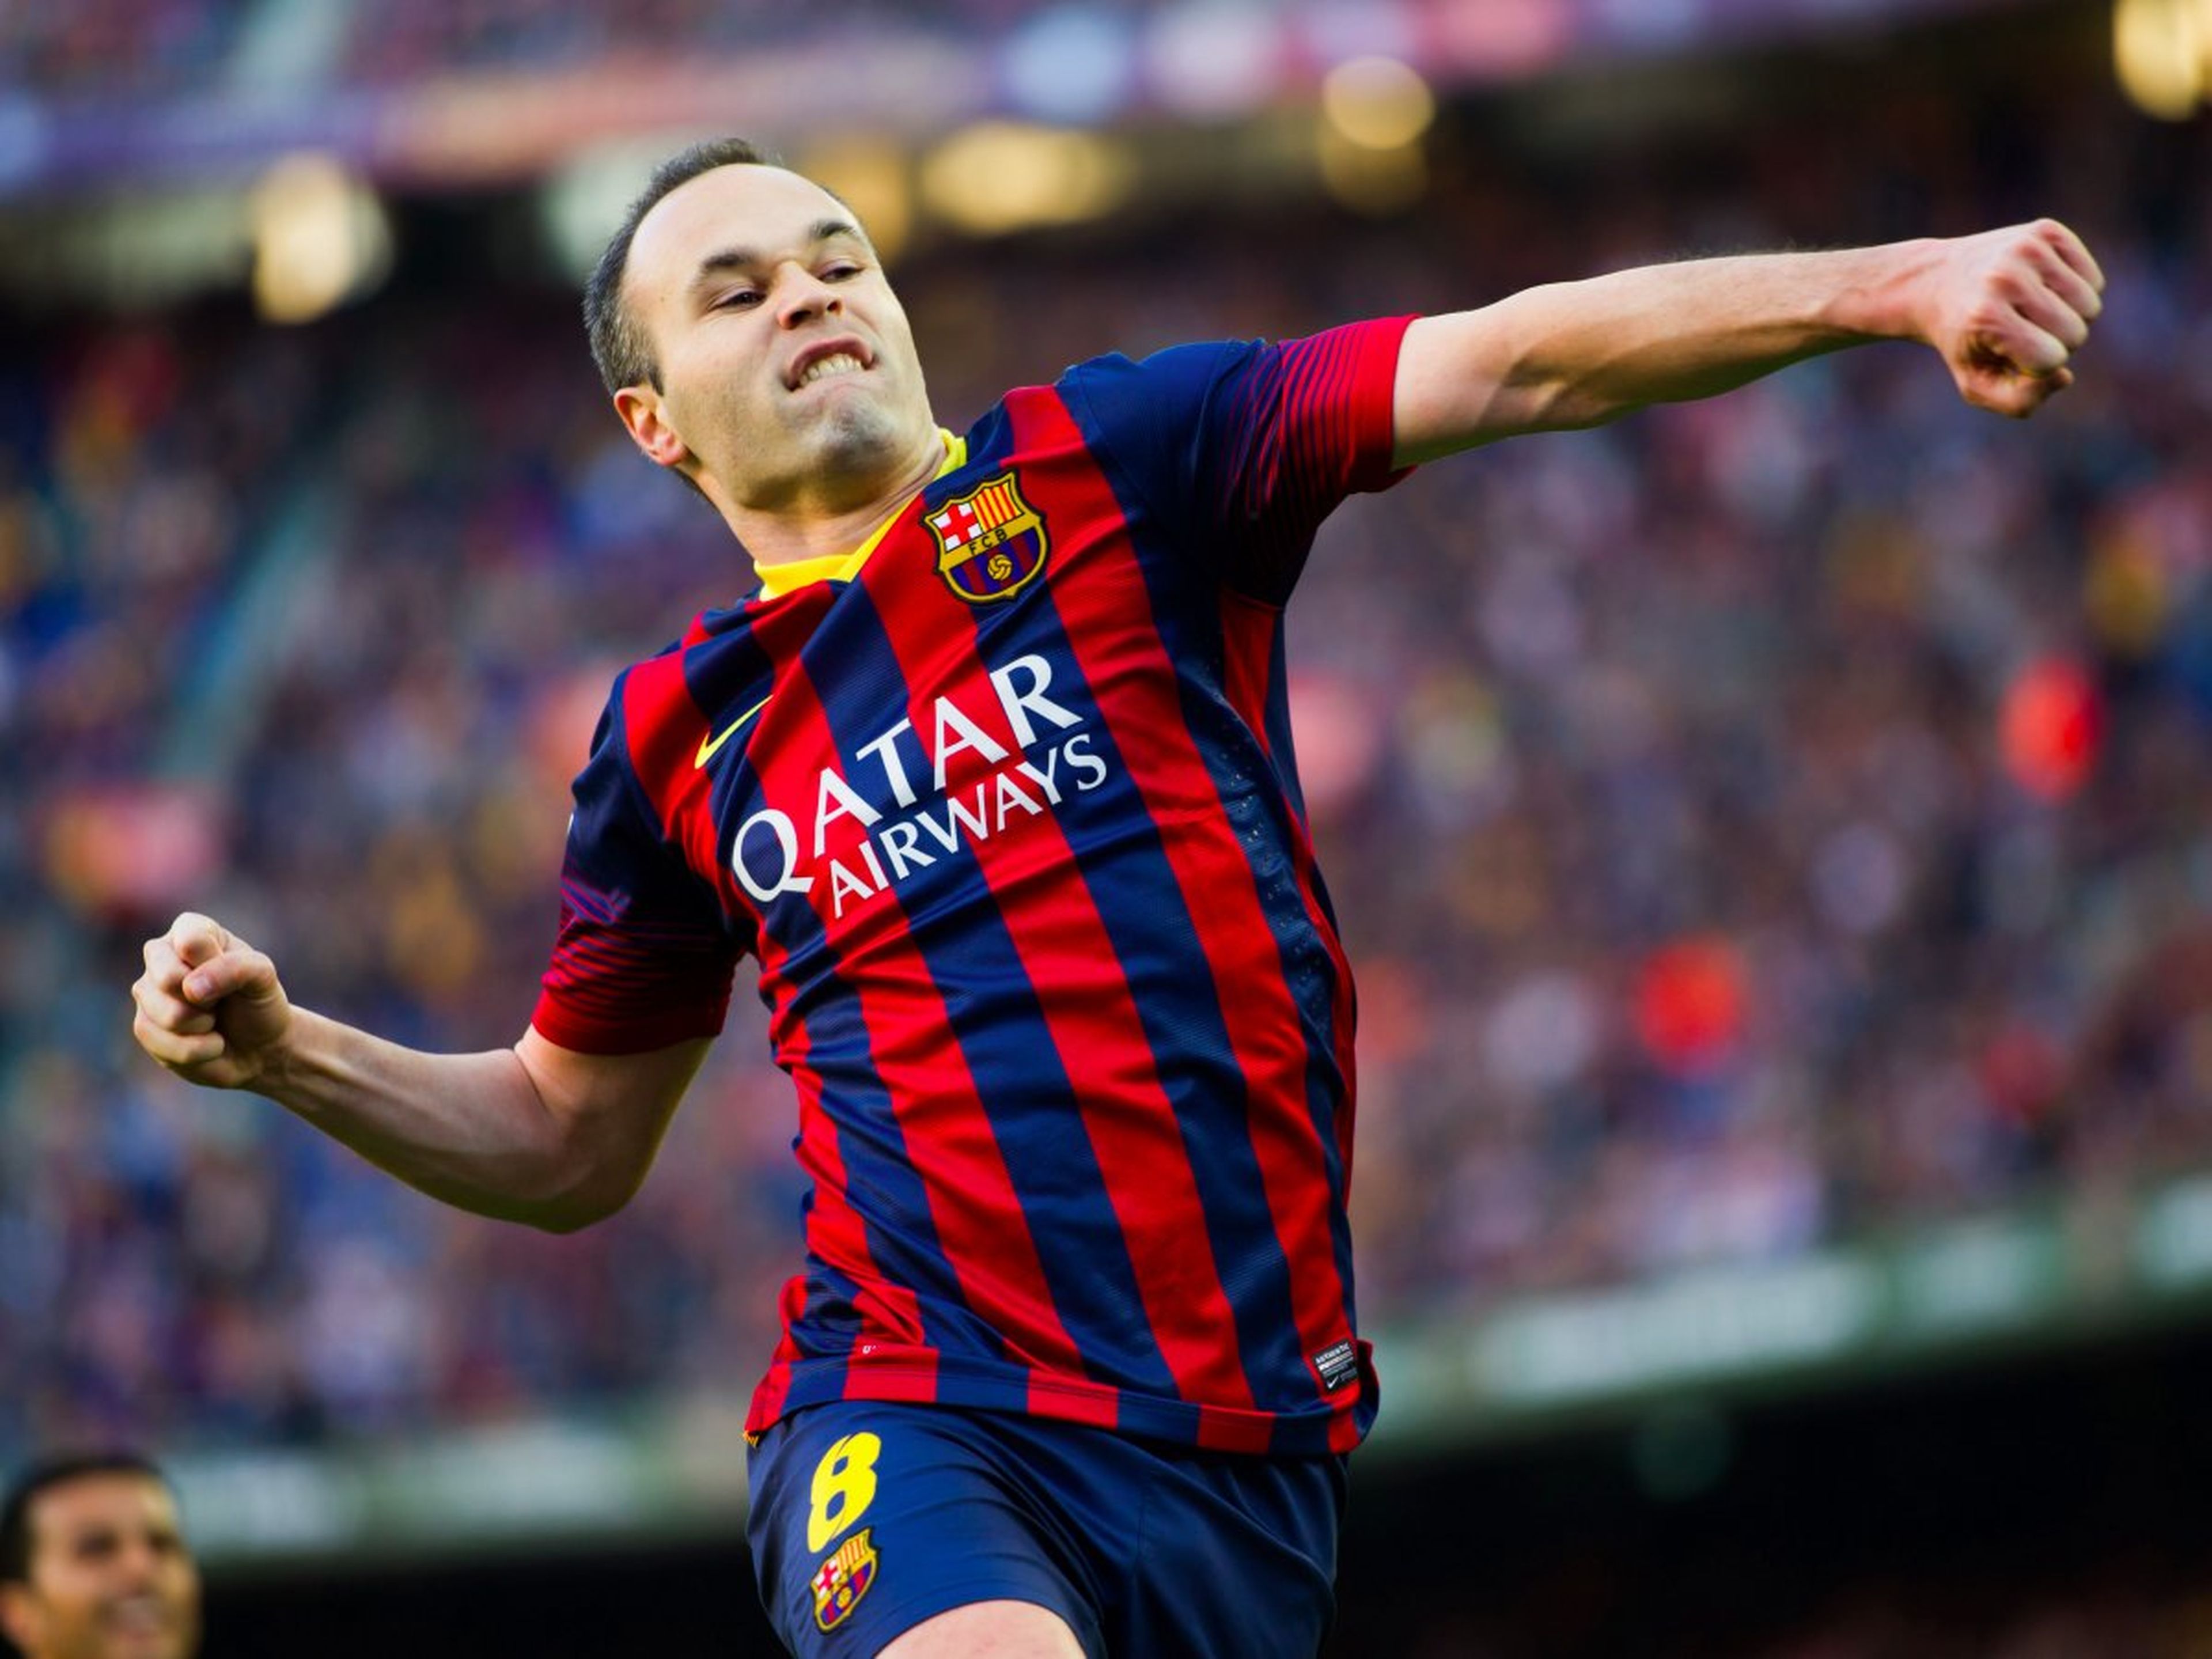 El jugador de fútbol Andres Iniesta, del FC Barcelona, celebra un gol.